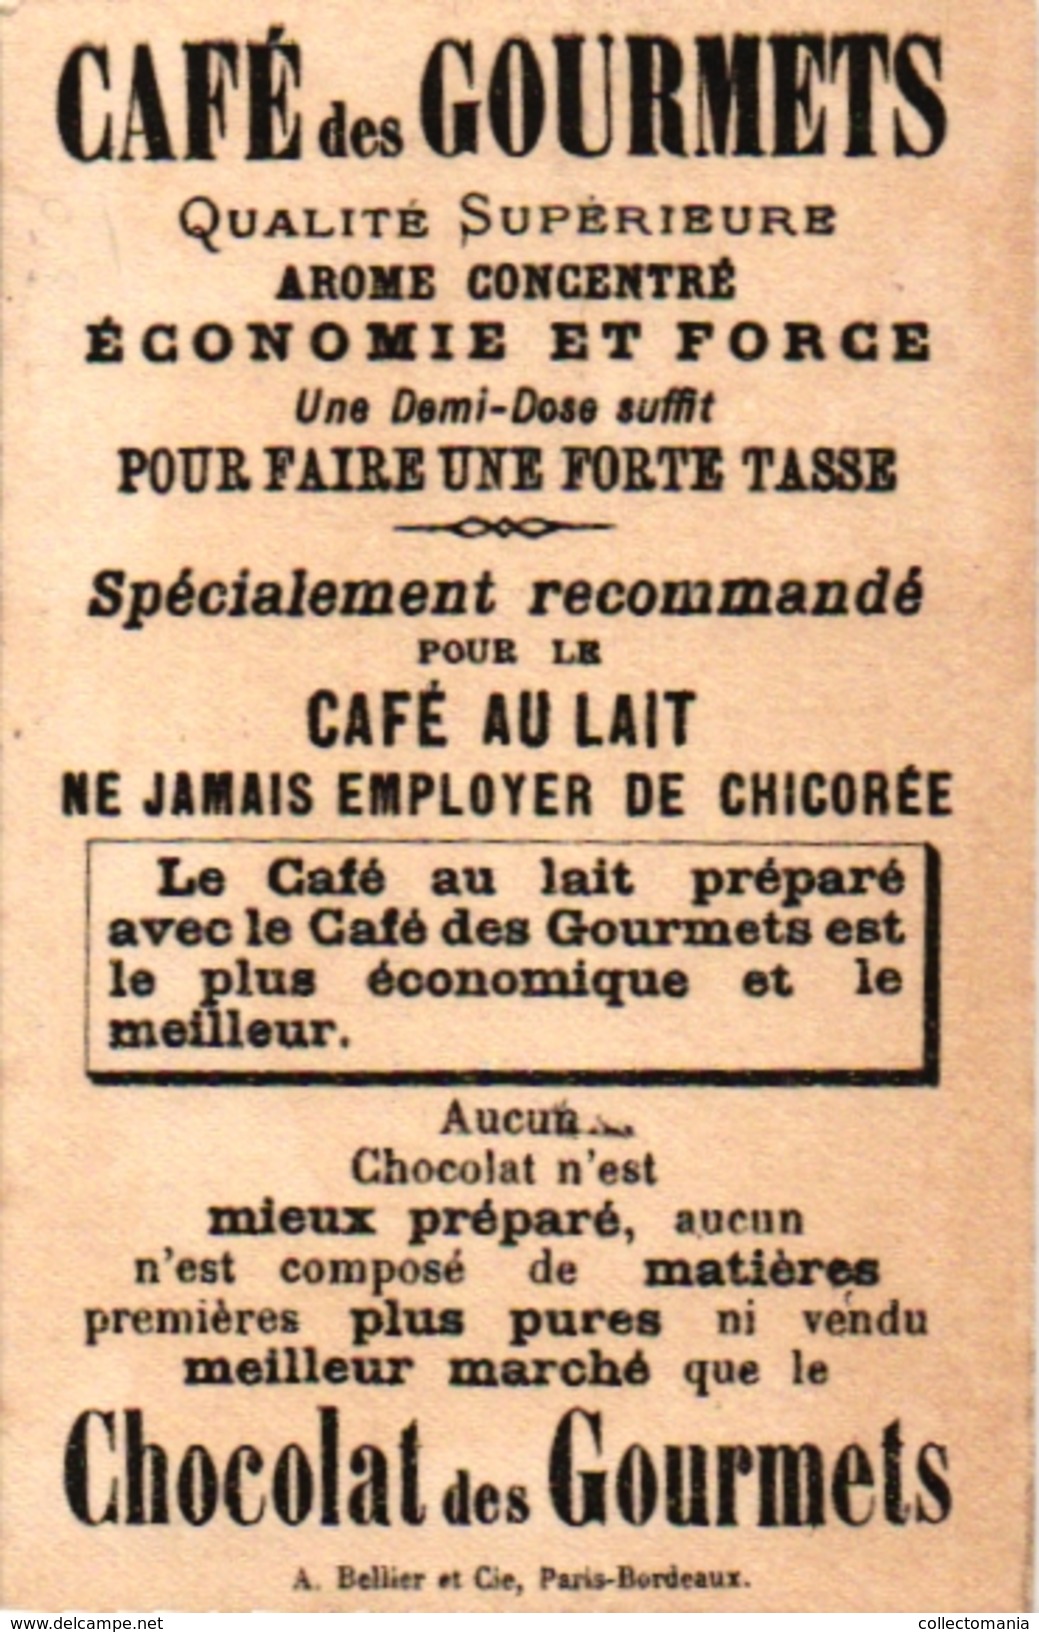 6 litho chromo  CARDS c1900 CROQUET GAME JEU de CROQUET Krocketspiel Pub Bordeaux Paris Choc des Gourmets Aiguebelle